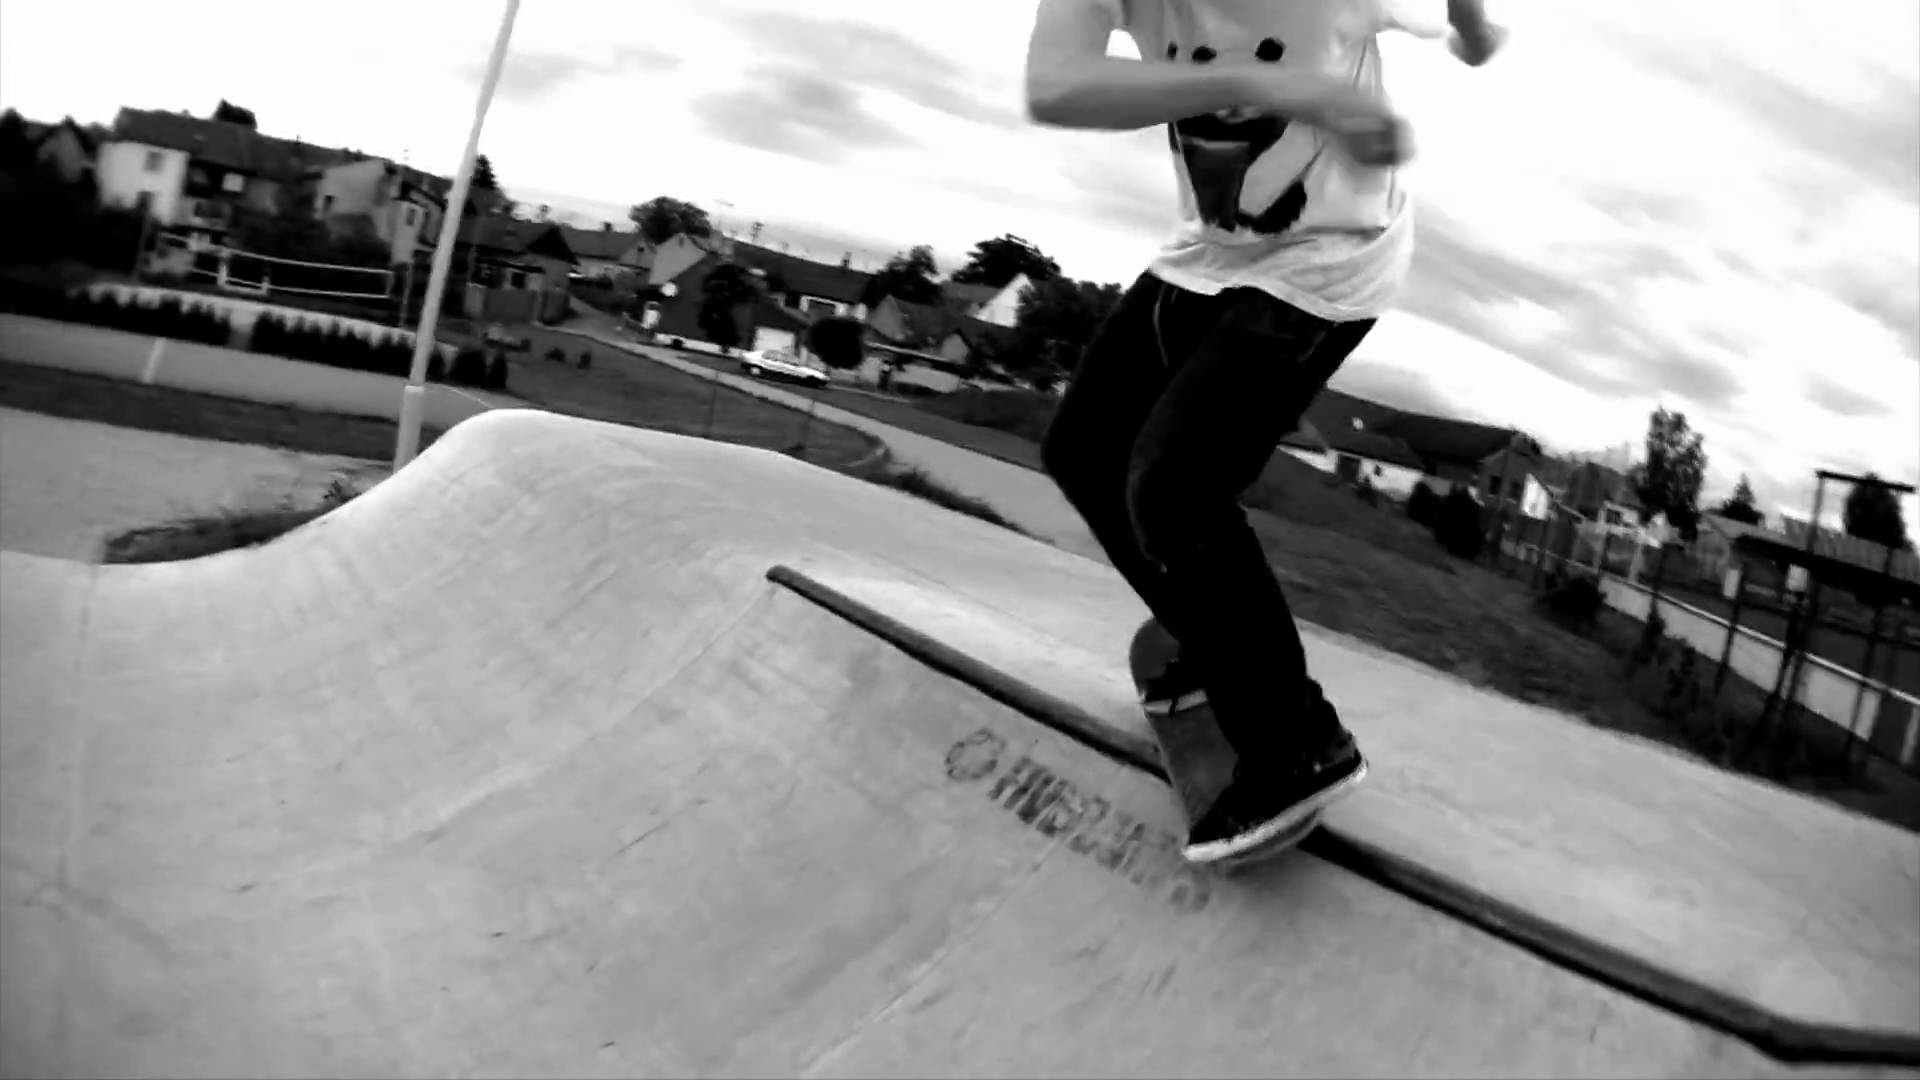 Black & White Skateboarding